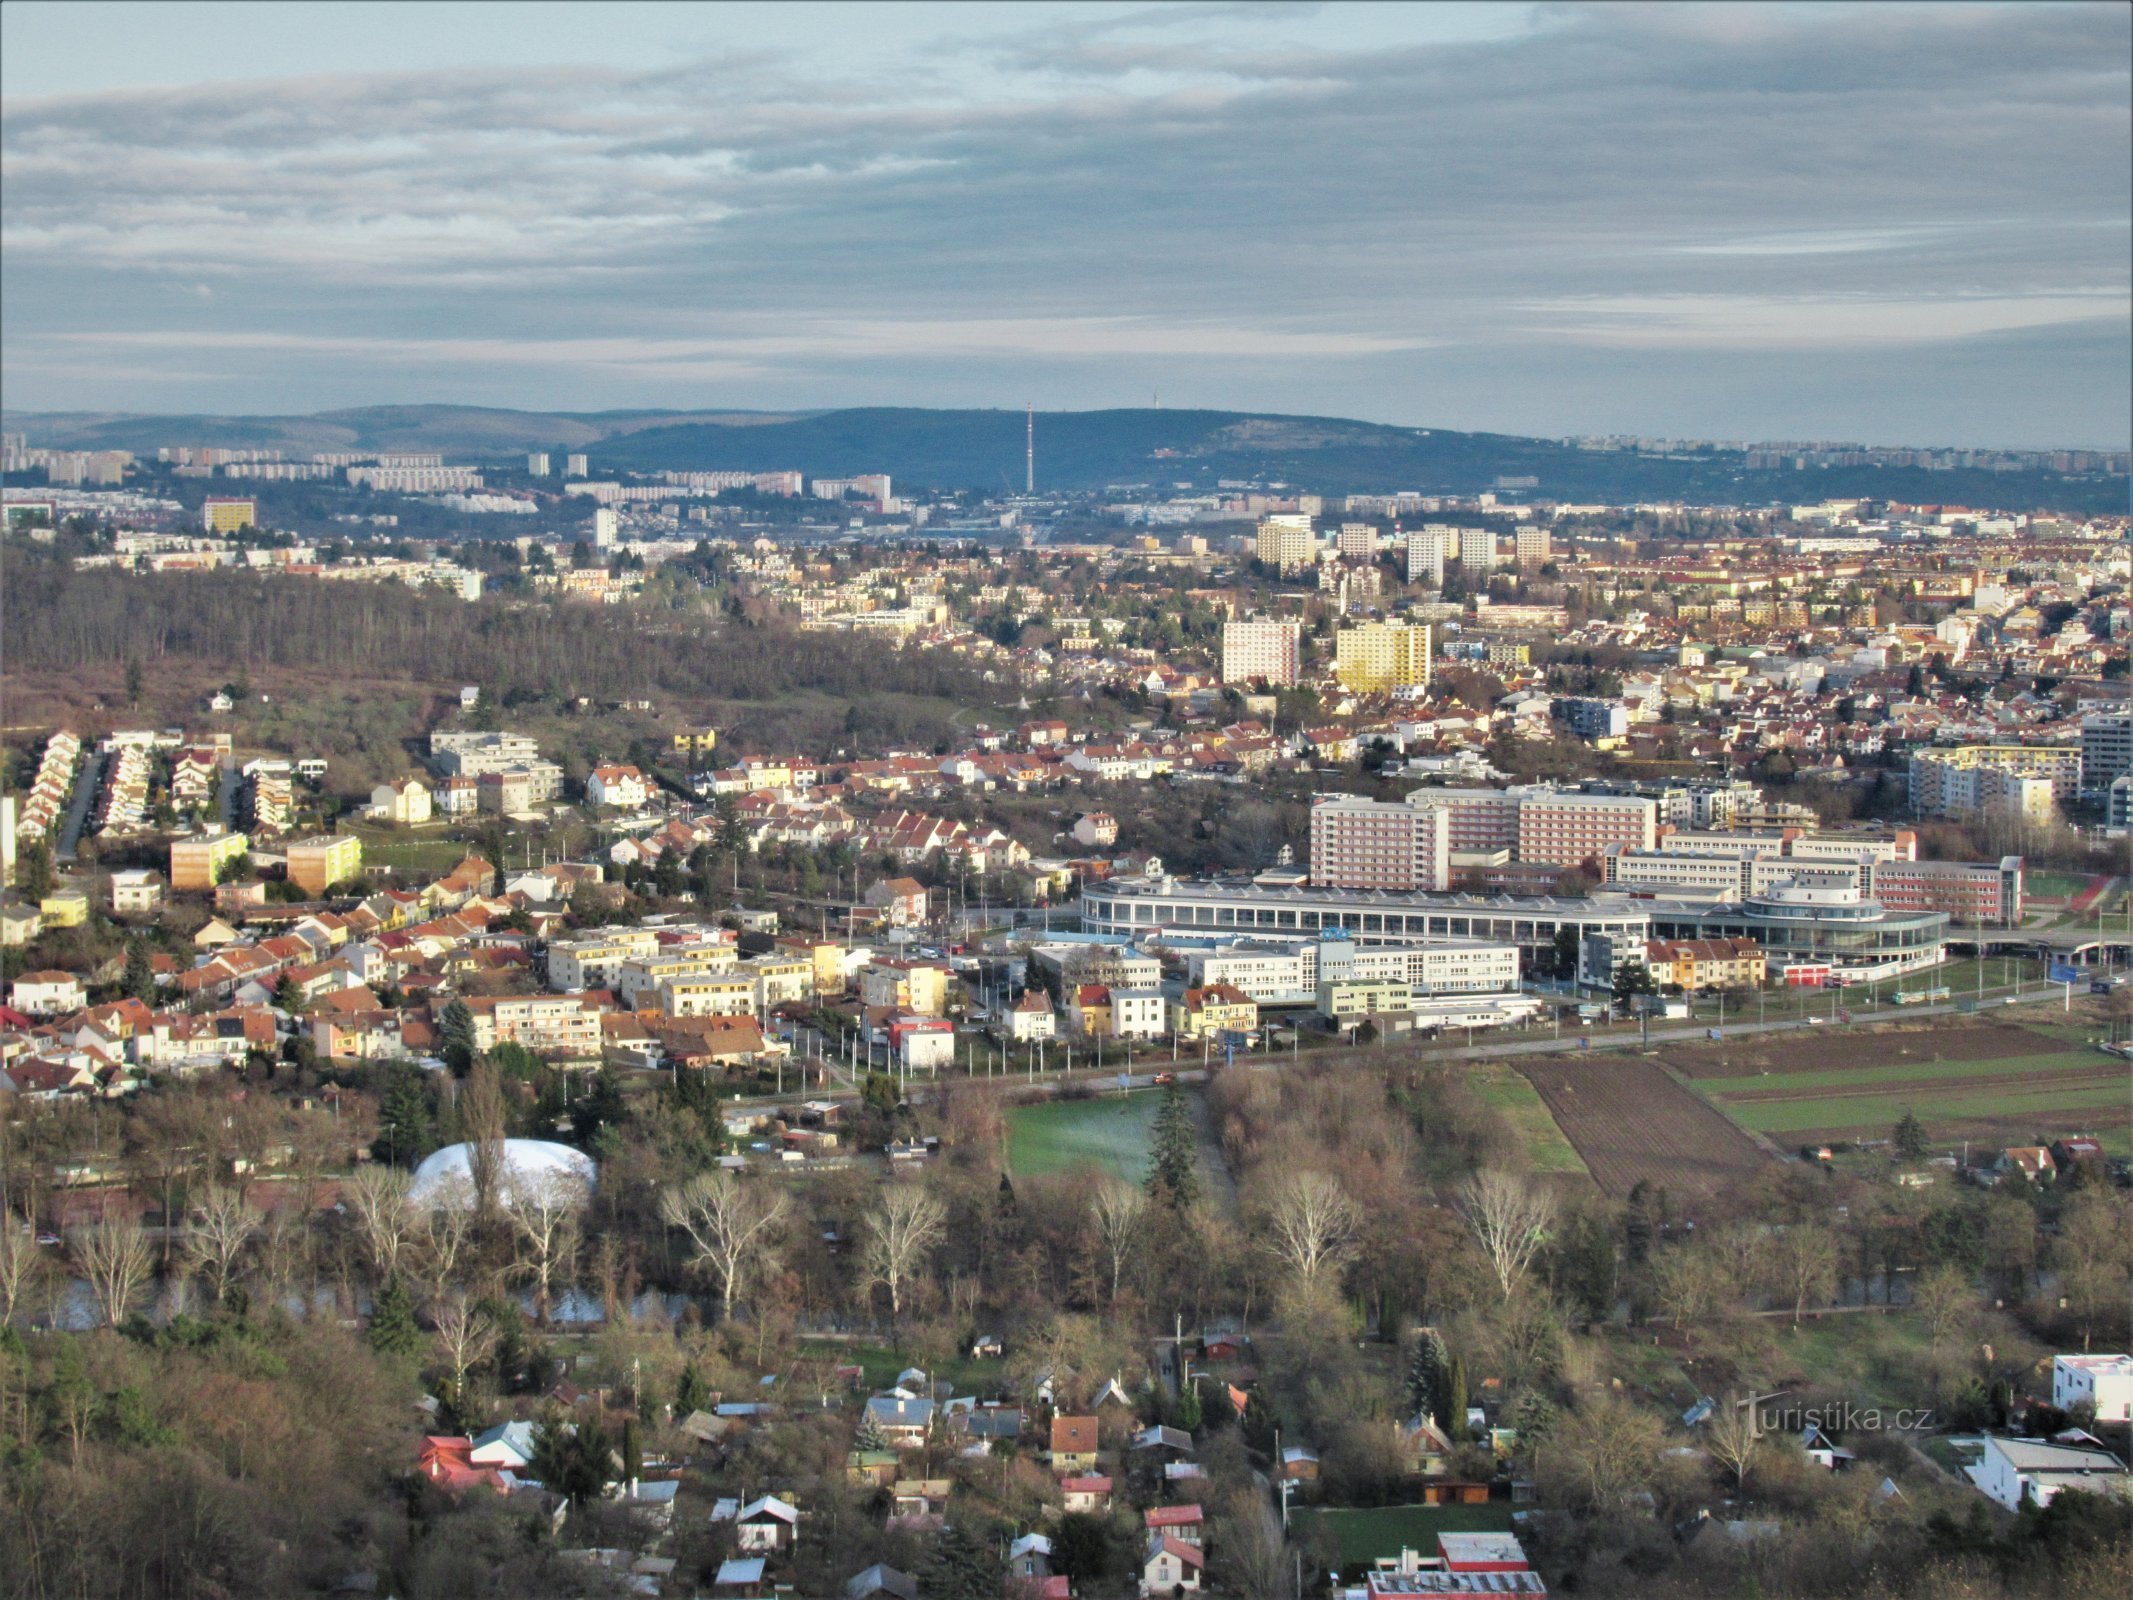 Vista desde la torre de observación hacia la parte central de la ciudad